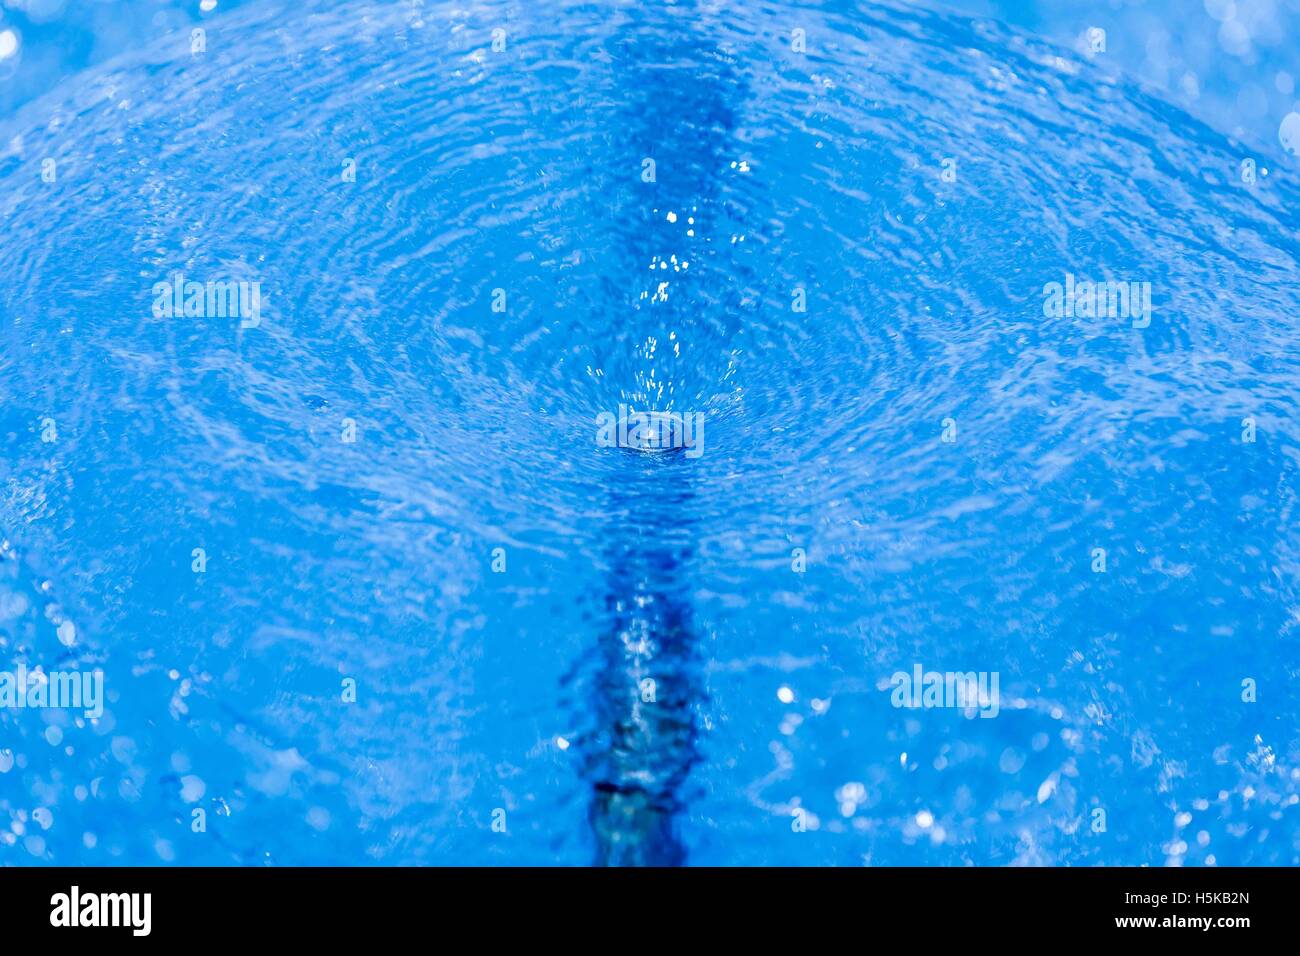 Un écran circulaire de jets d'eau en spray bleu fontaine Banque D'Images